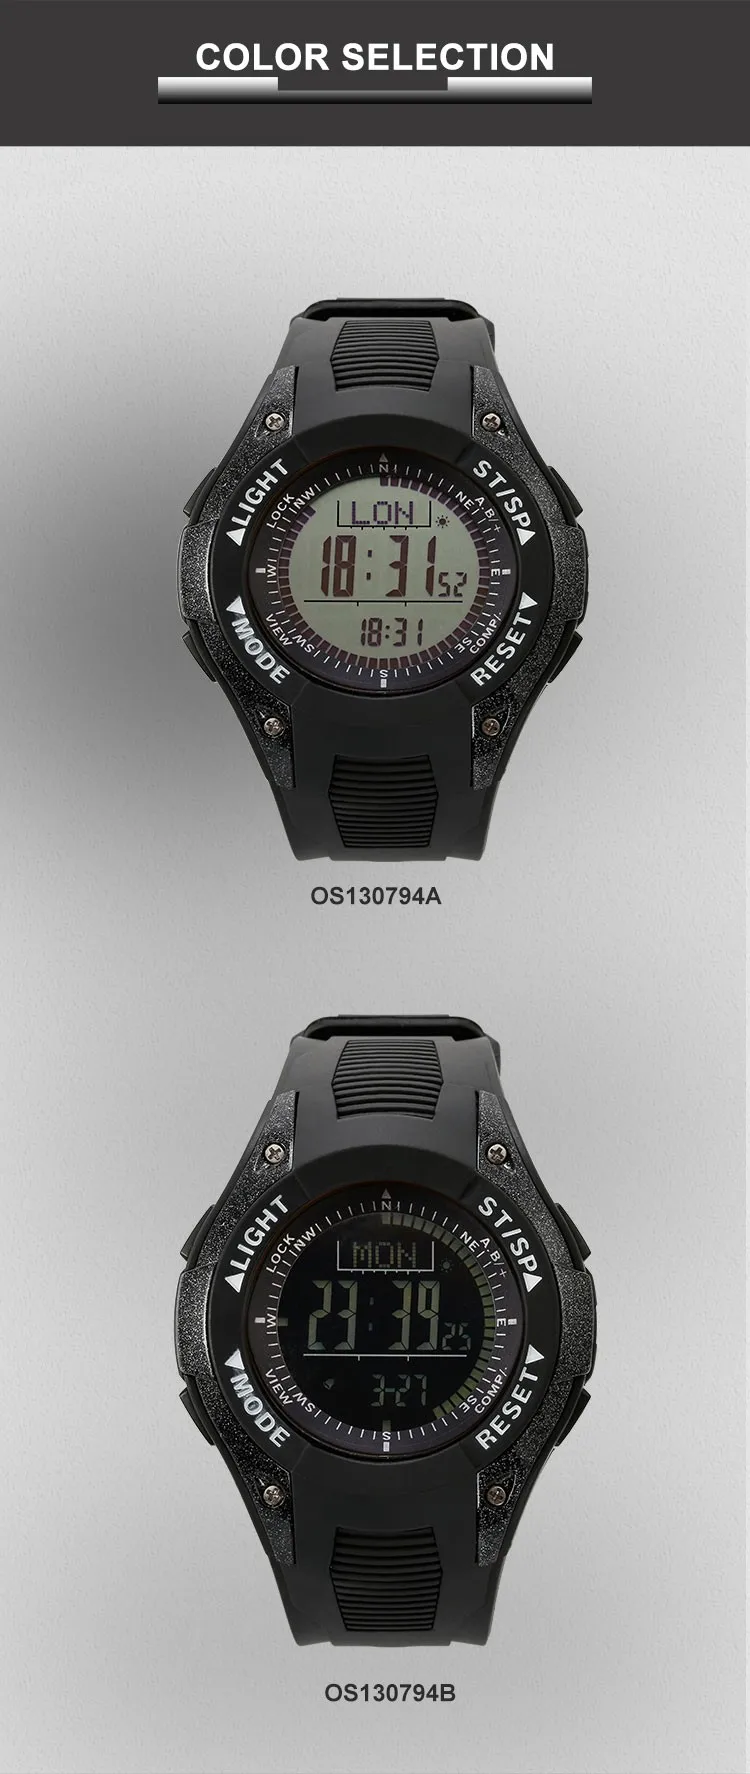 Sunroad часы Водонепроницаемый цифровые наручные часы W/высотомер + Барометр + Компасы + мировое время + Секундомер спортивные часы часы Для